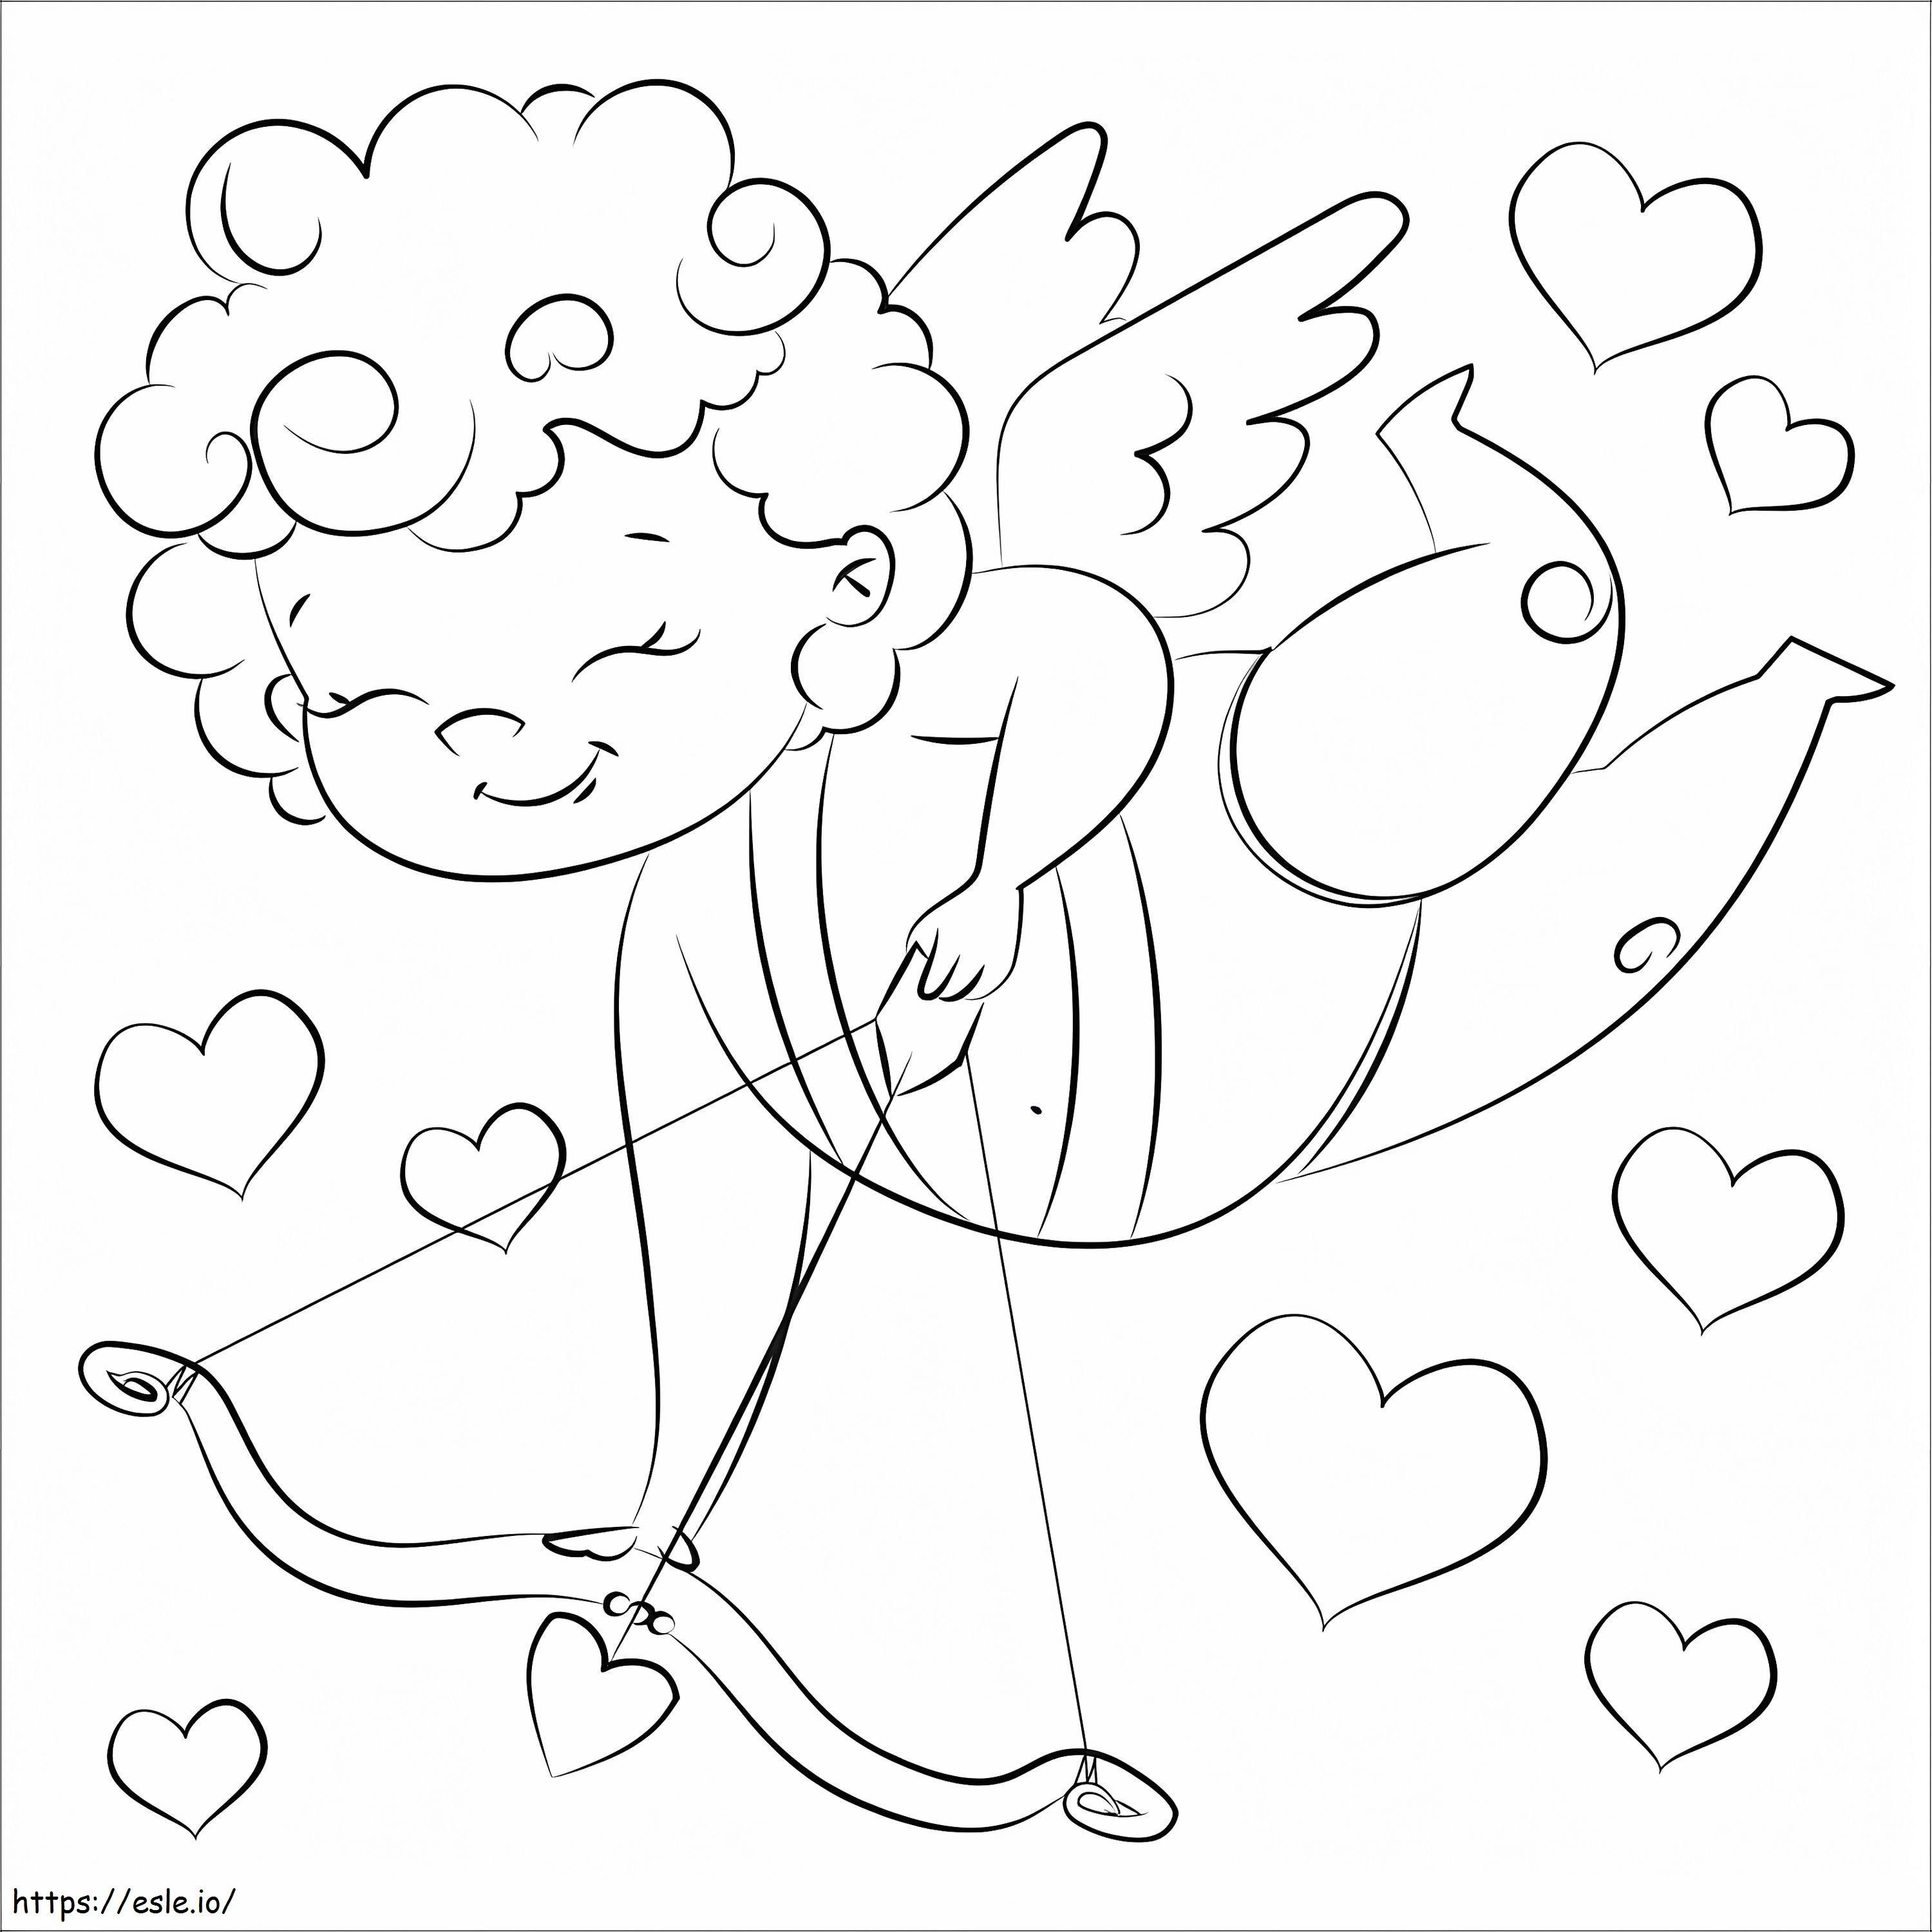 Happy Cupid coloring page